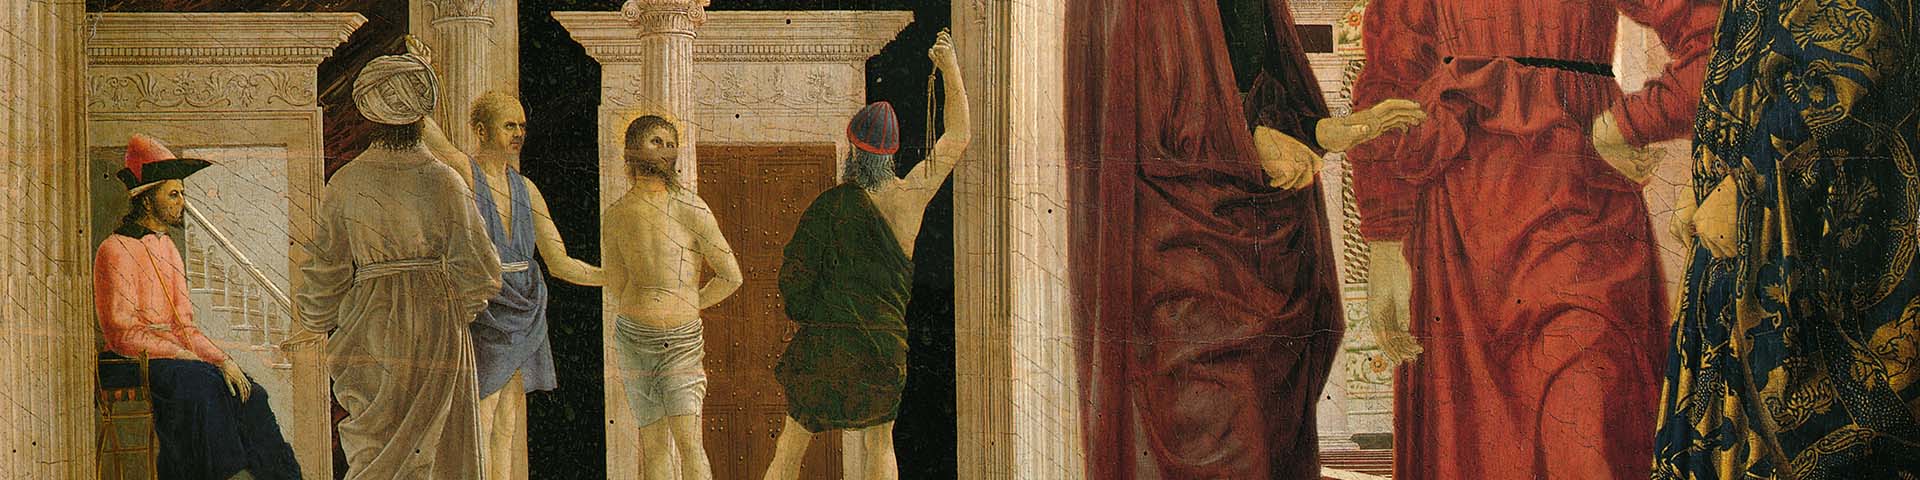 Piero della Francesca, The Flagellation of Christ 